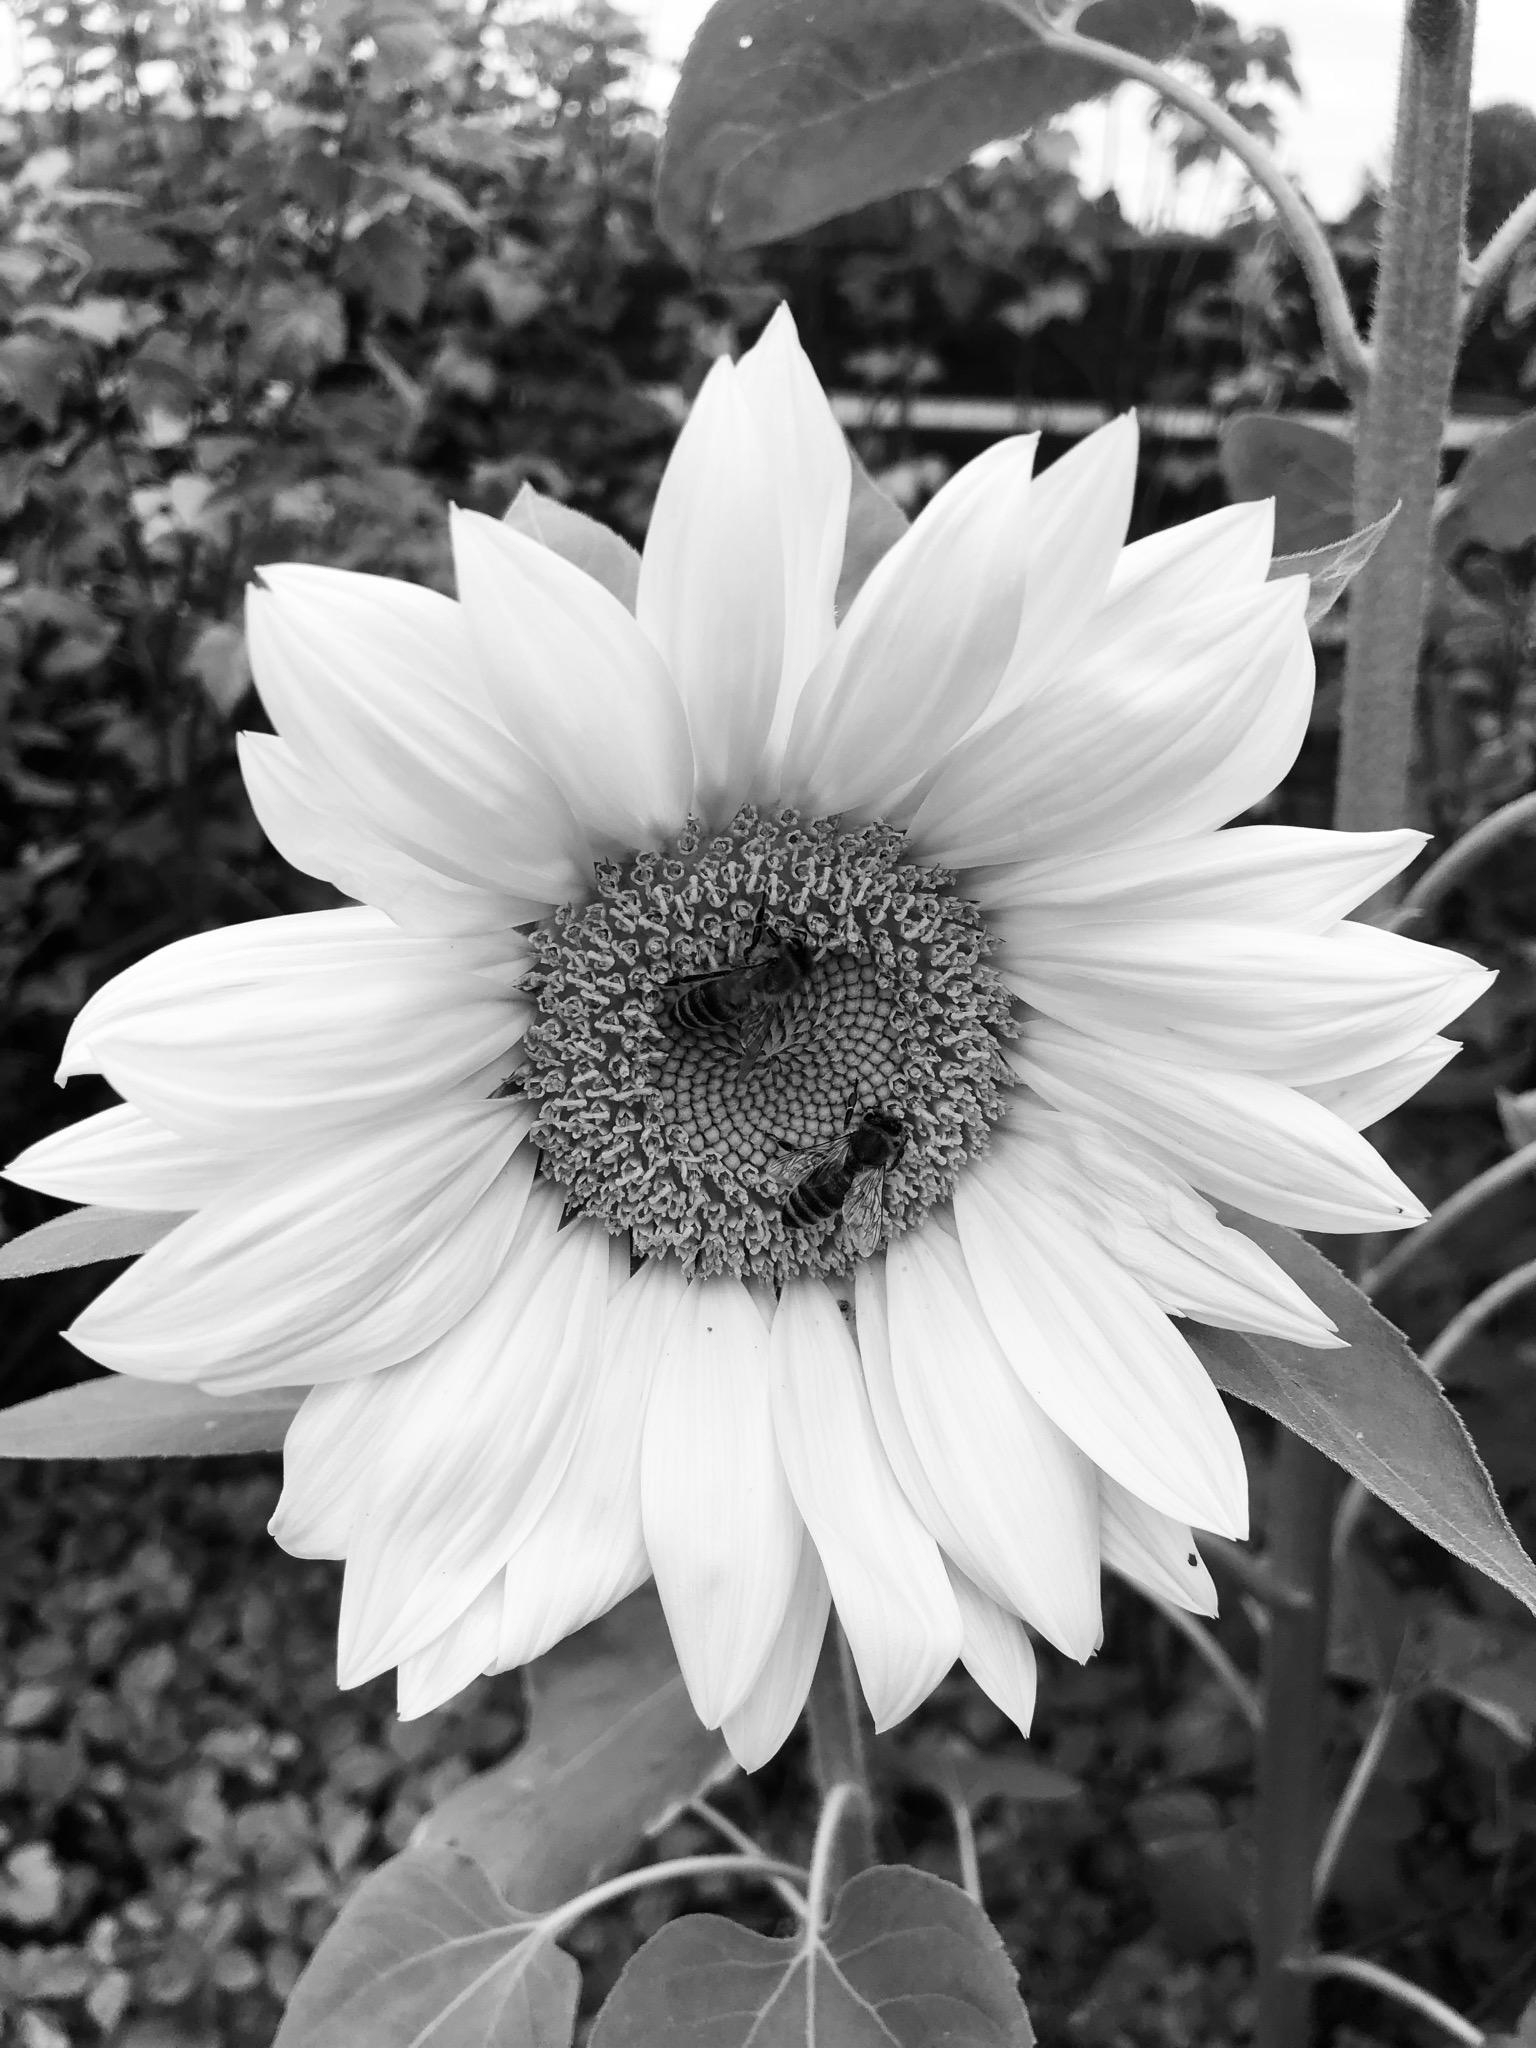 #Sonnenblume #Natur #Garten in schwarz-weiß sieht die Sonnenblume sehr edel aus!